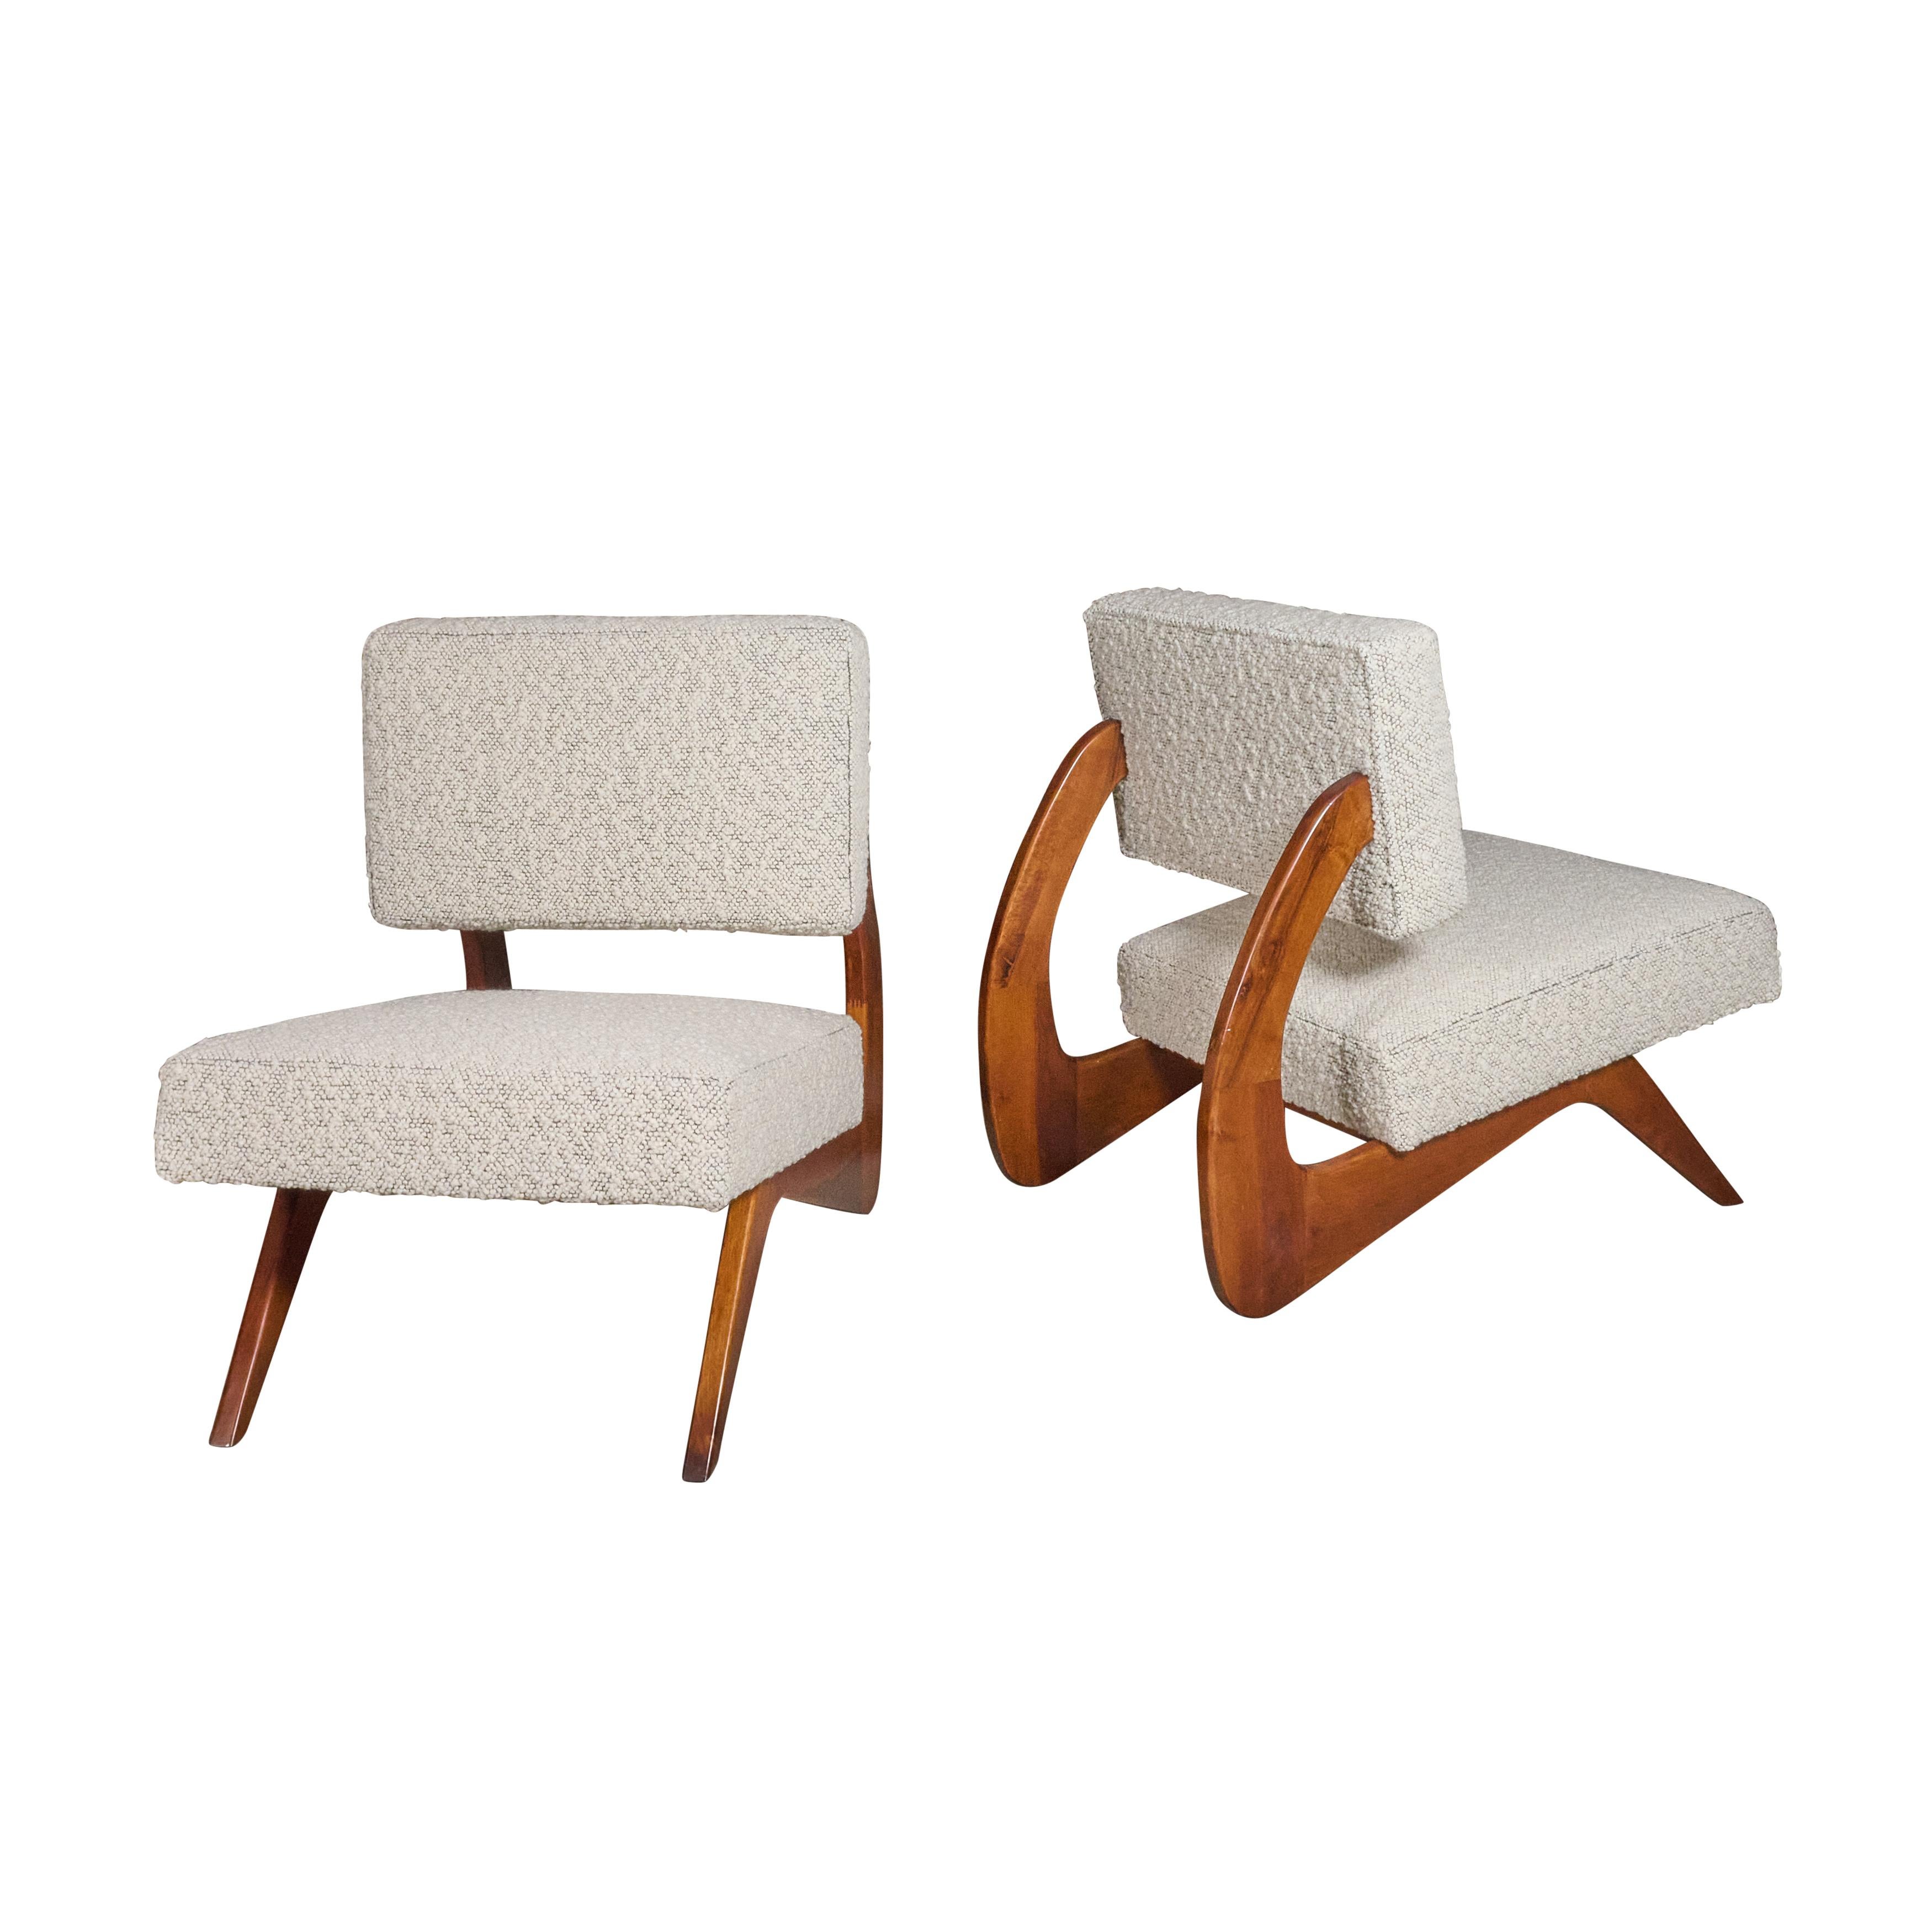 Neu angefertigtes Paar gepolsterte Stühle. Mit tollem Stoff- und Rahmendesign.

